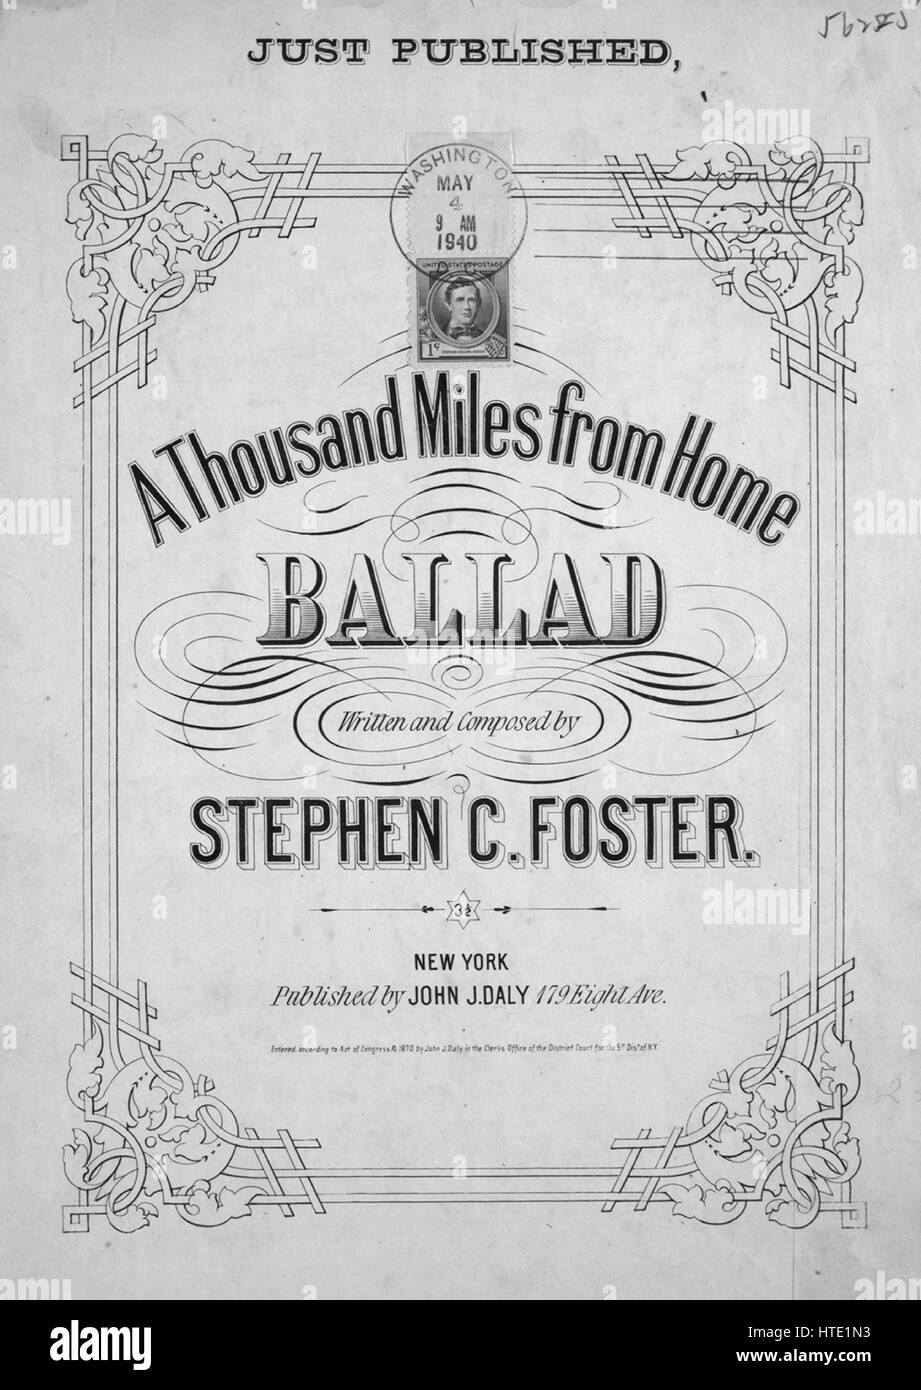 Sheet Music image de couverture de la chanson 'un millier de miles de la  maison ballade [1 100 Stephen Foster timbre apposé sur notre couverture]',  avec l'auteur original "Lecture notes écrites et